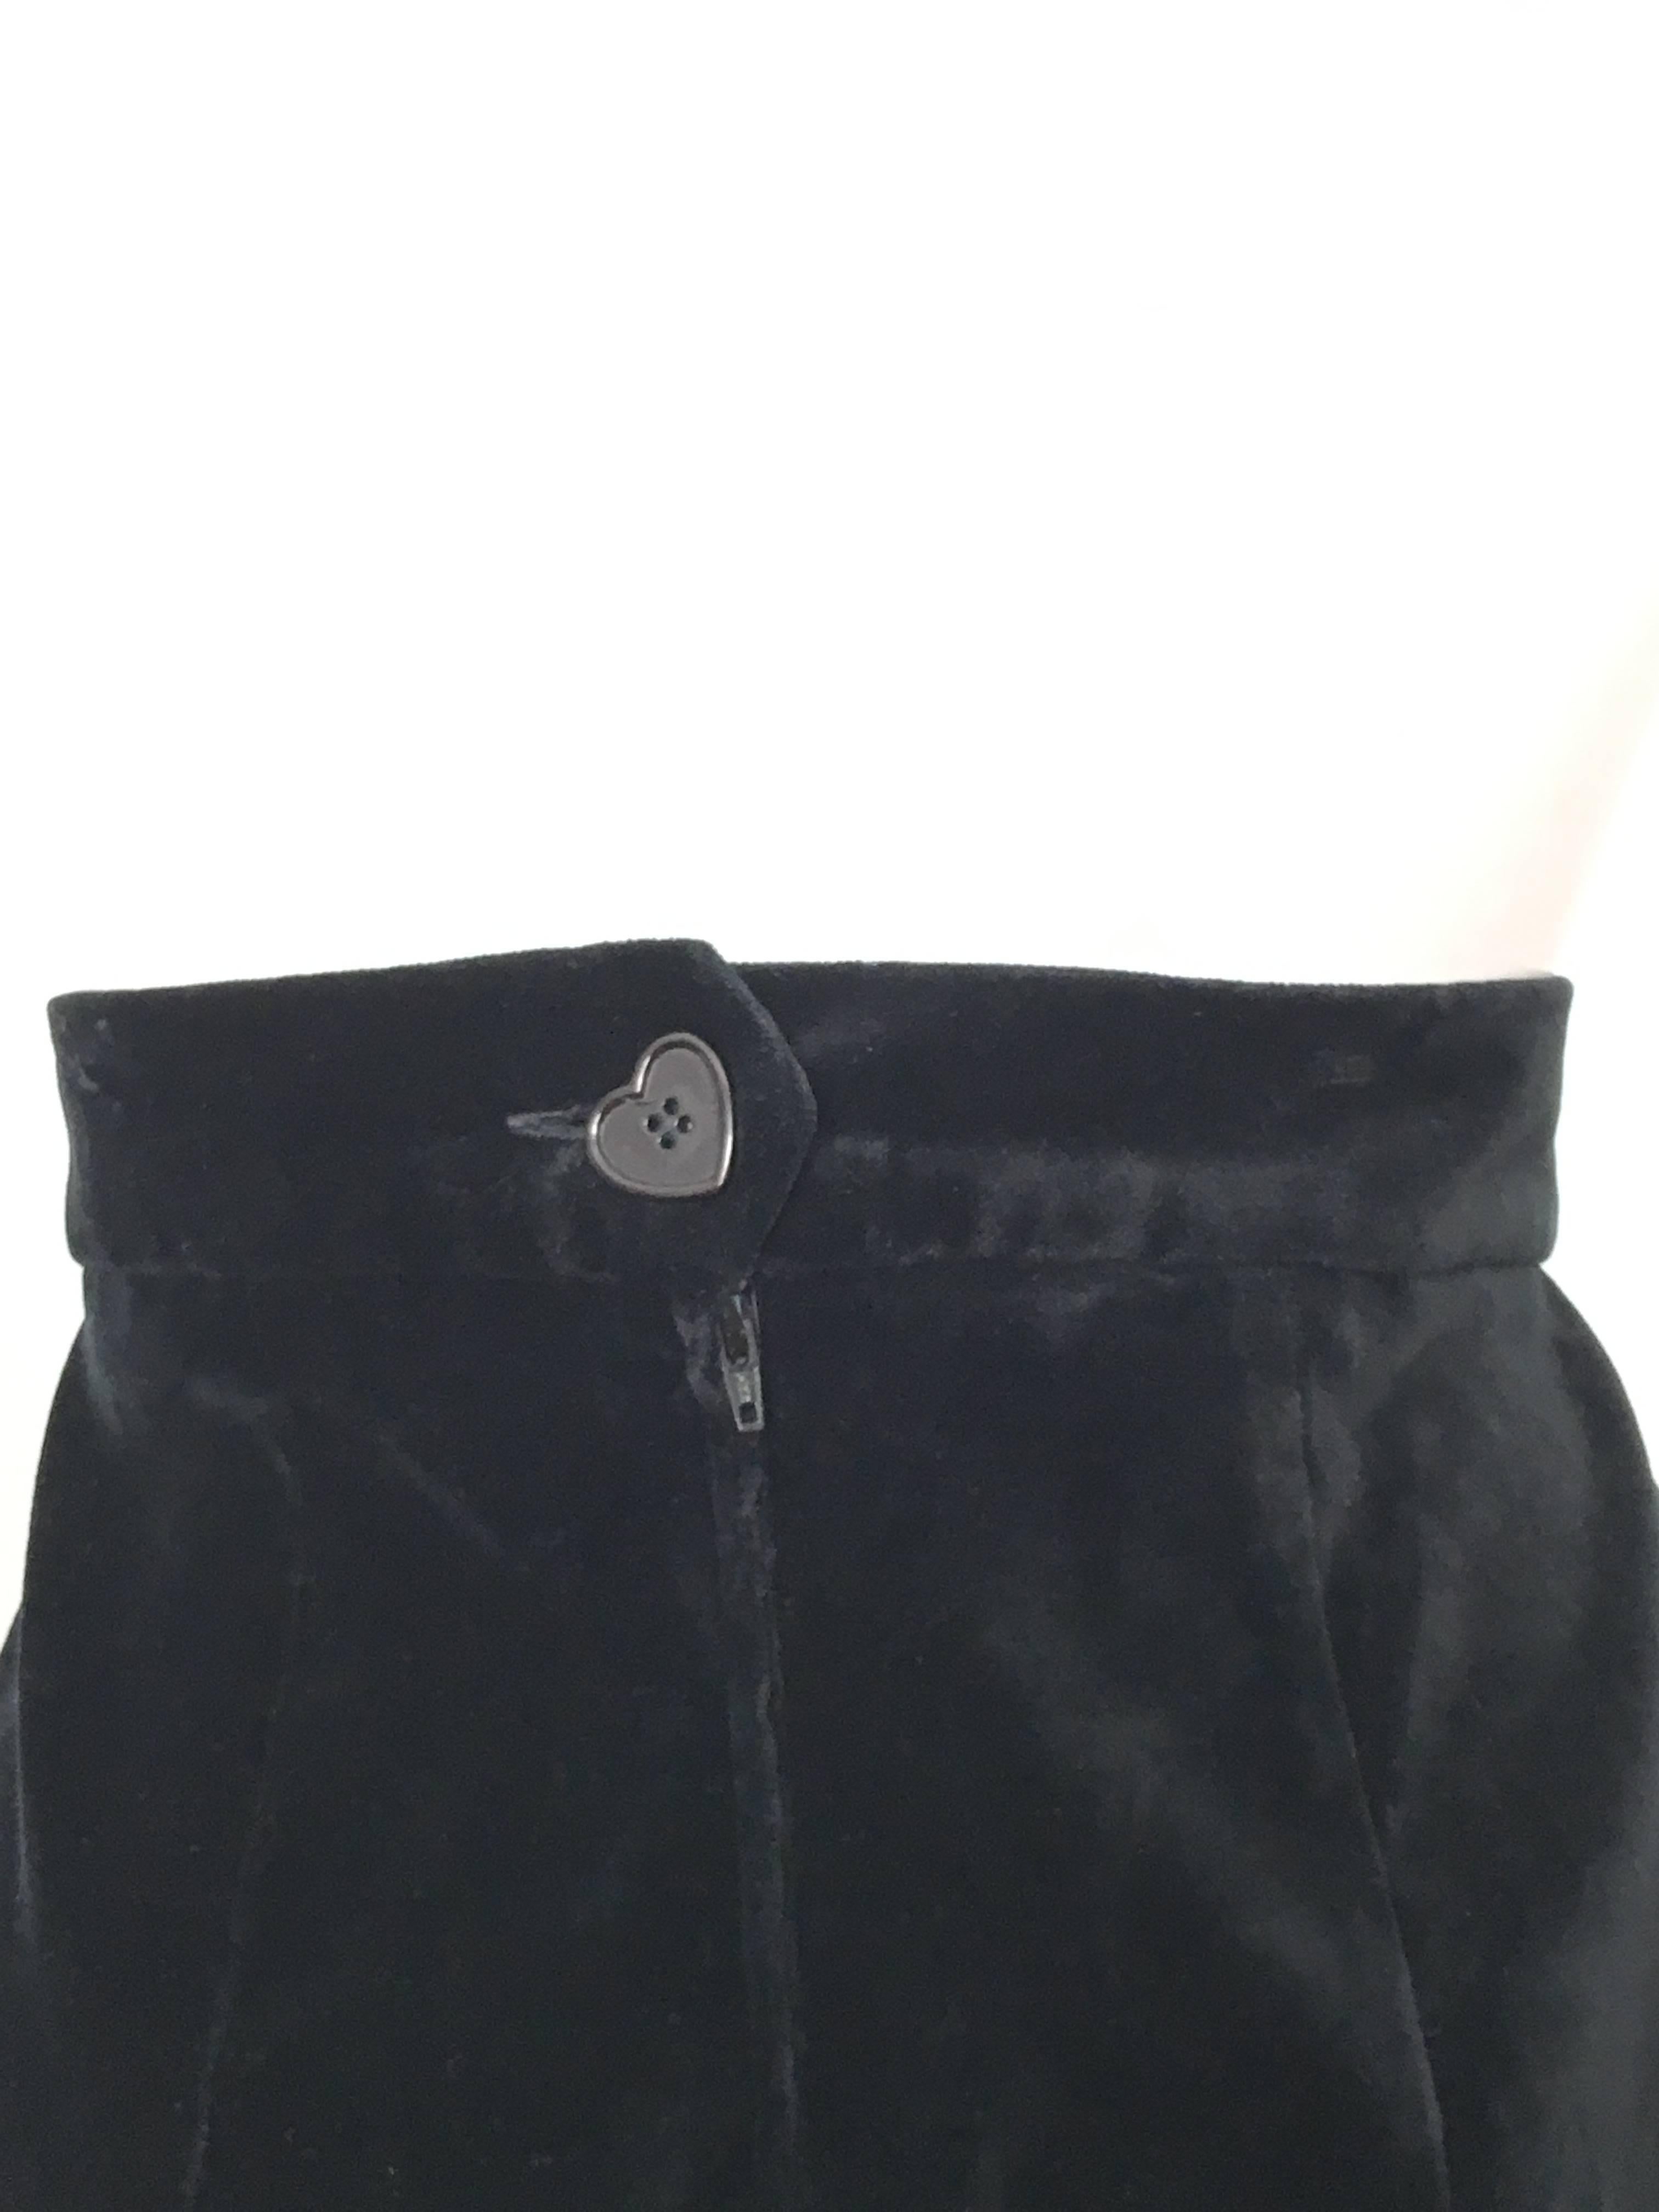 Moschino Black Velvet Long Straight Skirt Size 10 / 12.  For Sale 3